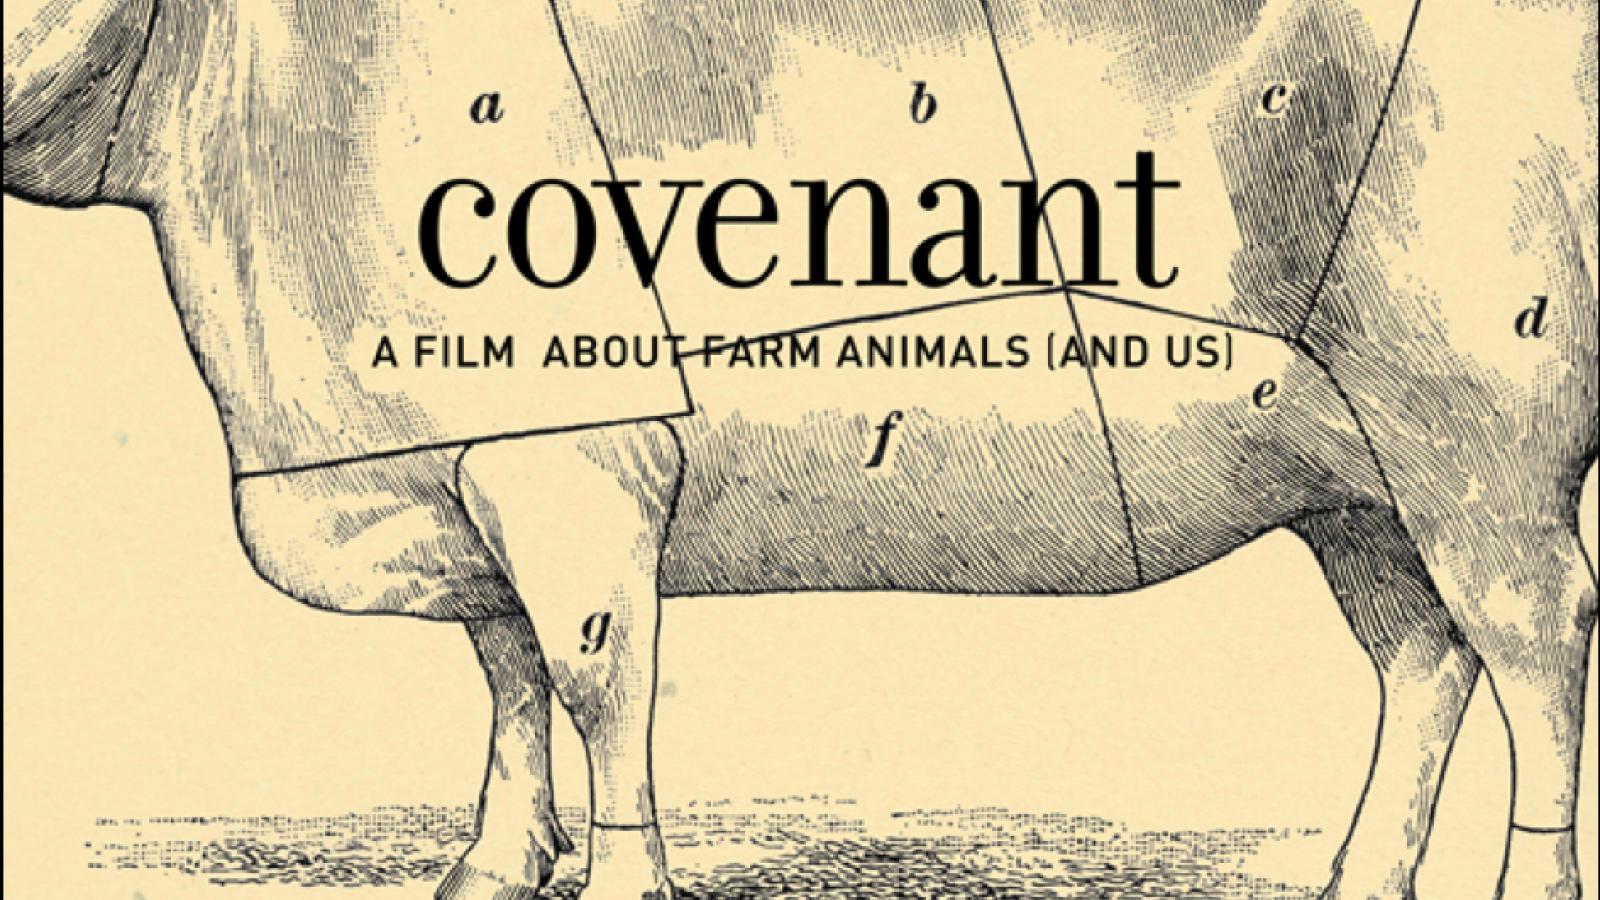 Covenant (film poster) 2012